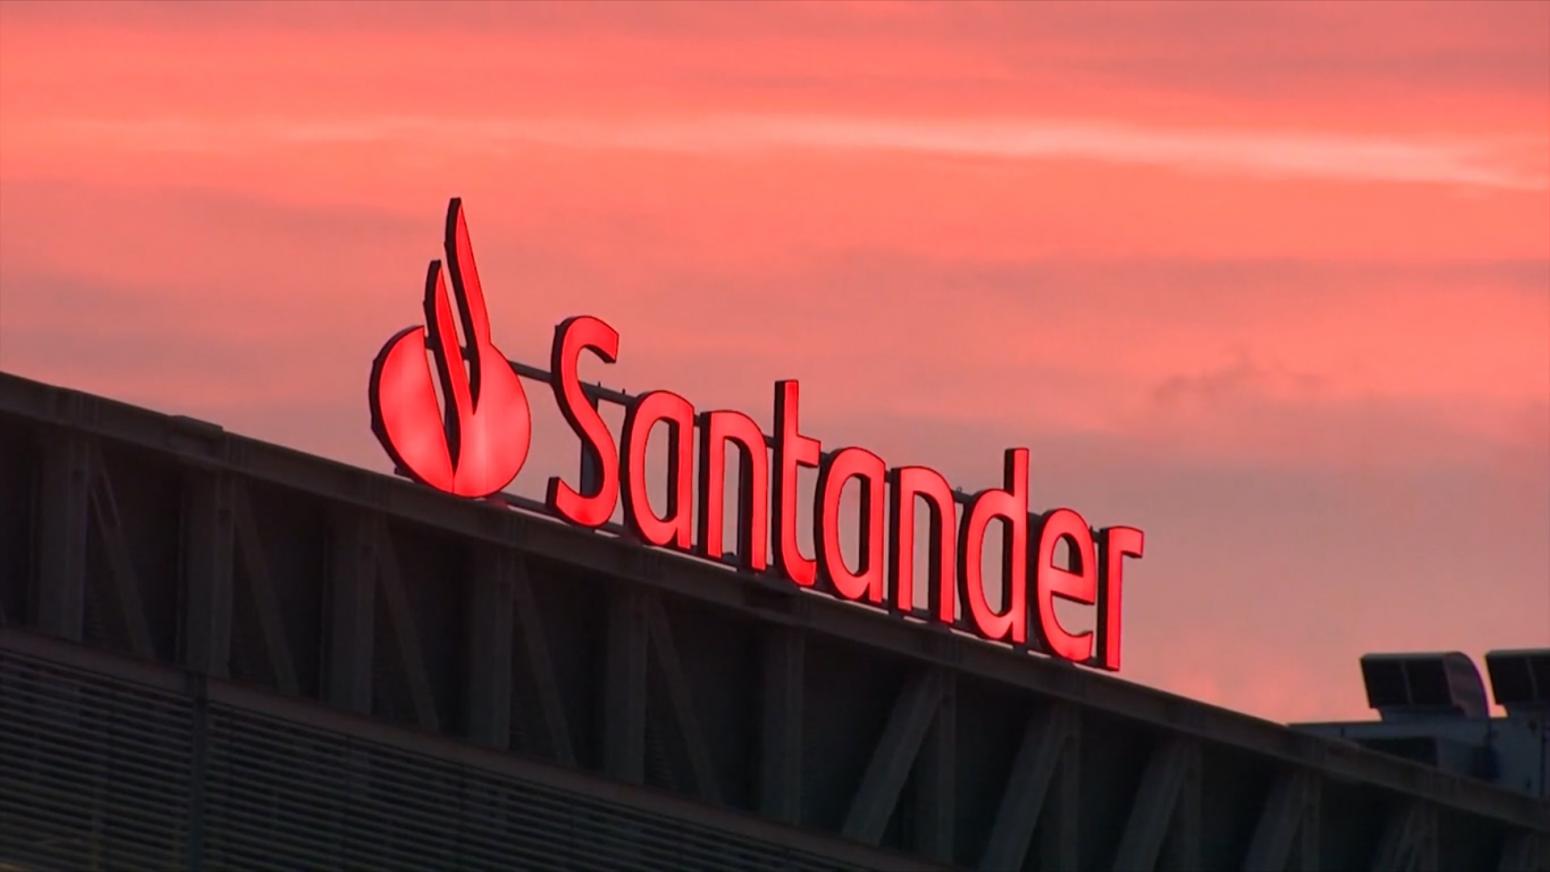 Beneficio Santander